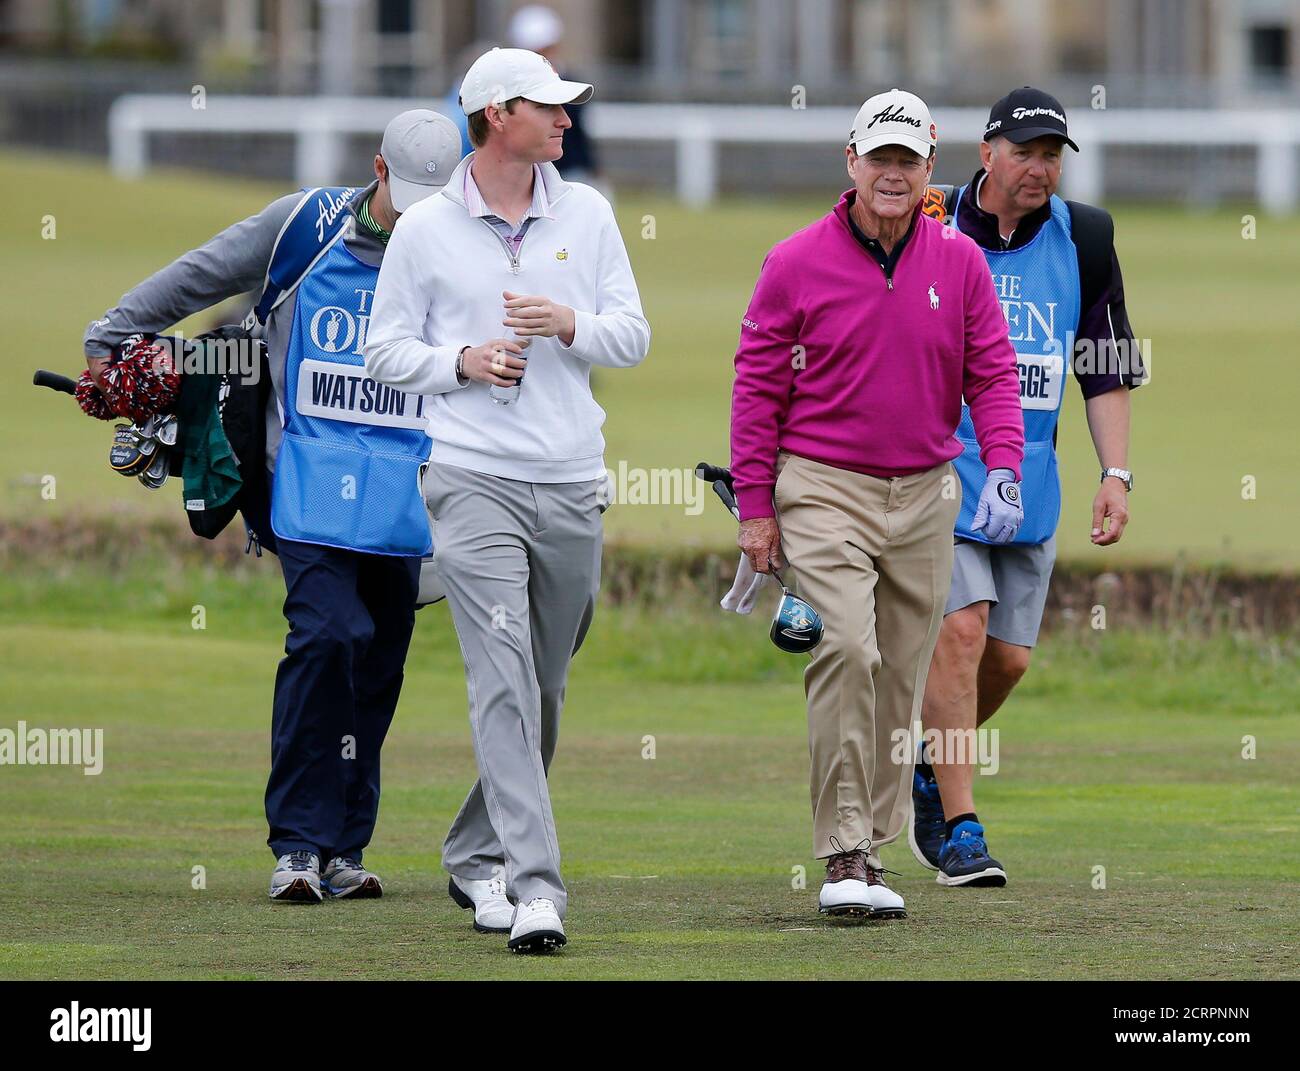 Tom Watson (2do R) de los EE.UU. Con Jordan Niebrugge de los EE.UU. Durante una ronda de práctica antes del campeonato de golf British Open en el Old Course en St. Andrews, Escocia, 13 de julio de 2015. REUTERS/Paul Childs Foto de stock